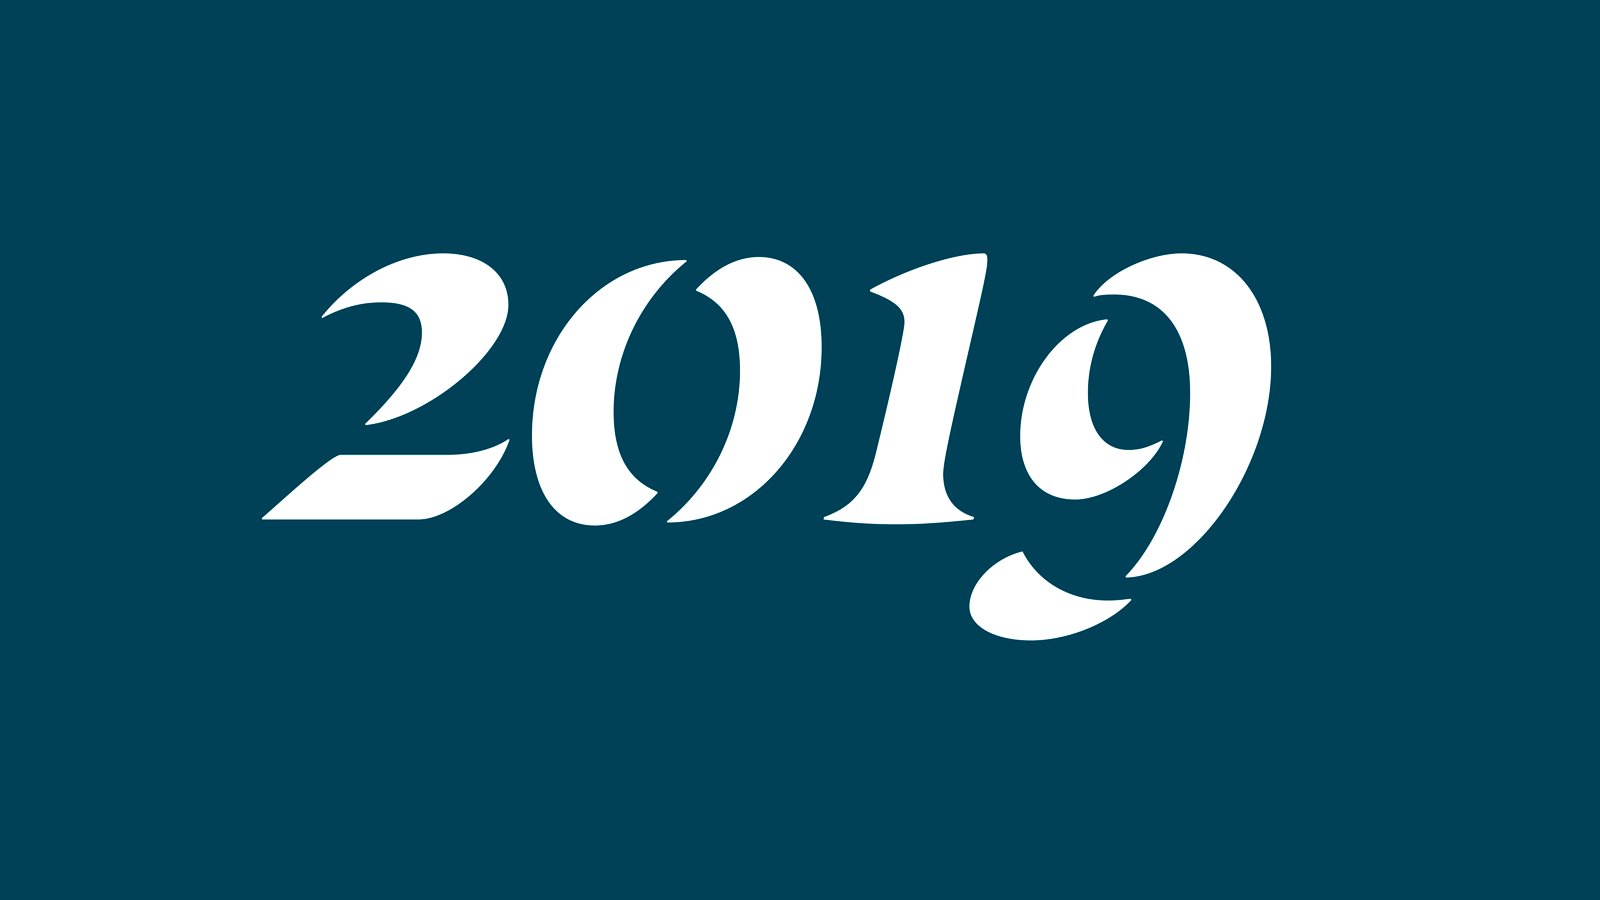 2019 Looking ahead